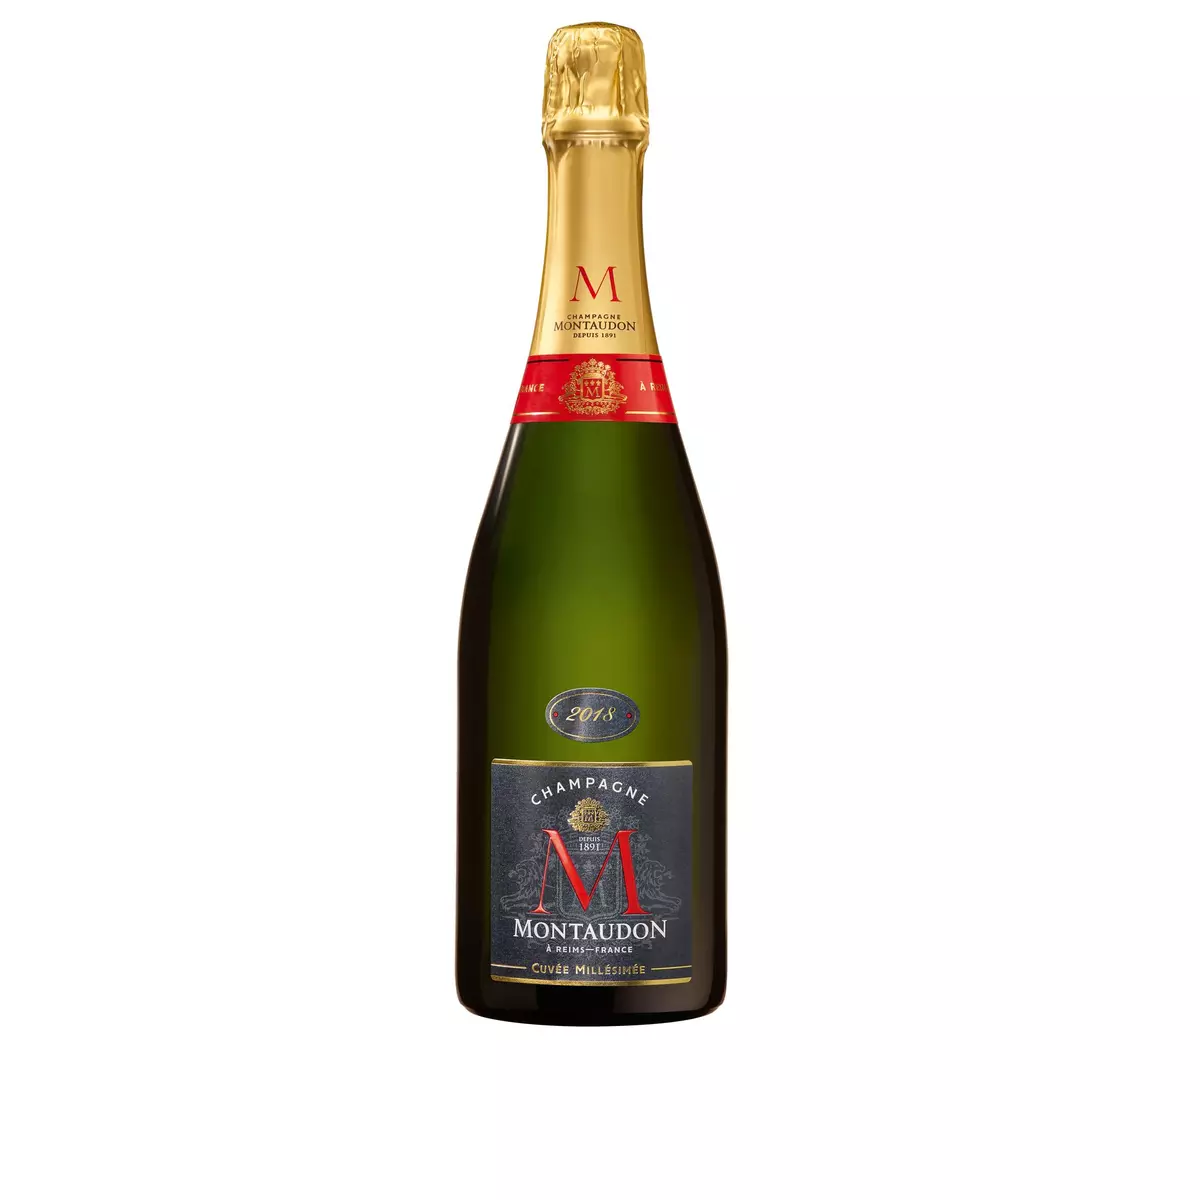 MONTAUDON AOP Champagne cuvée millésimée 2018 brut 75cl